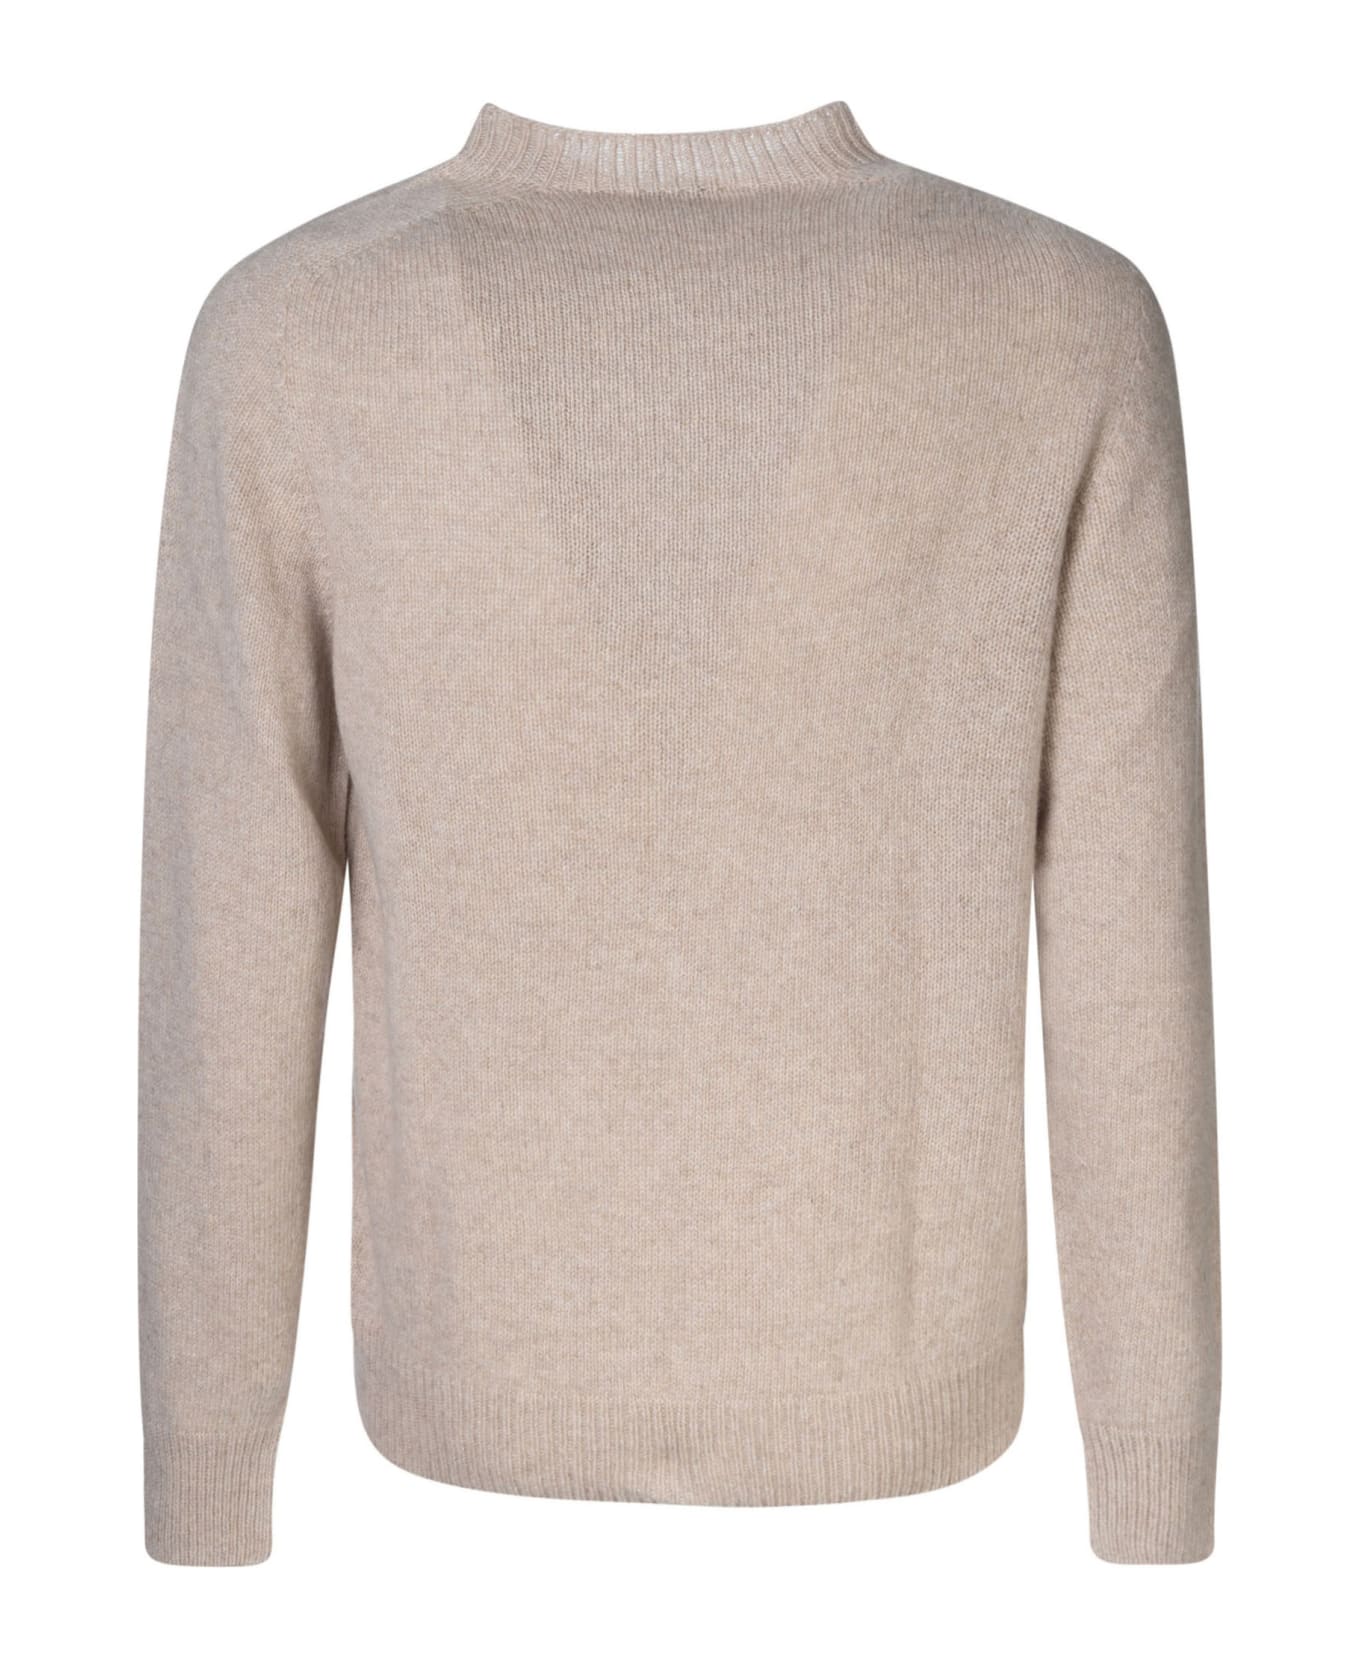 Lanvin Round Neck Sweater - Beige ニットウェア